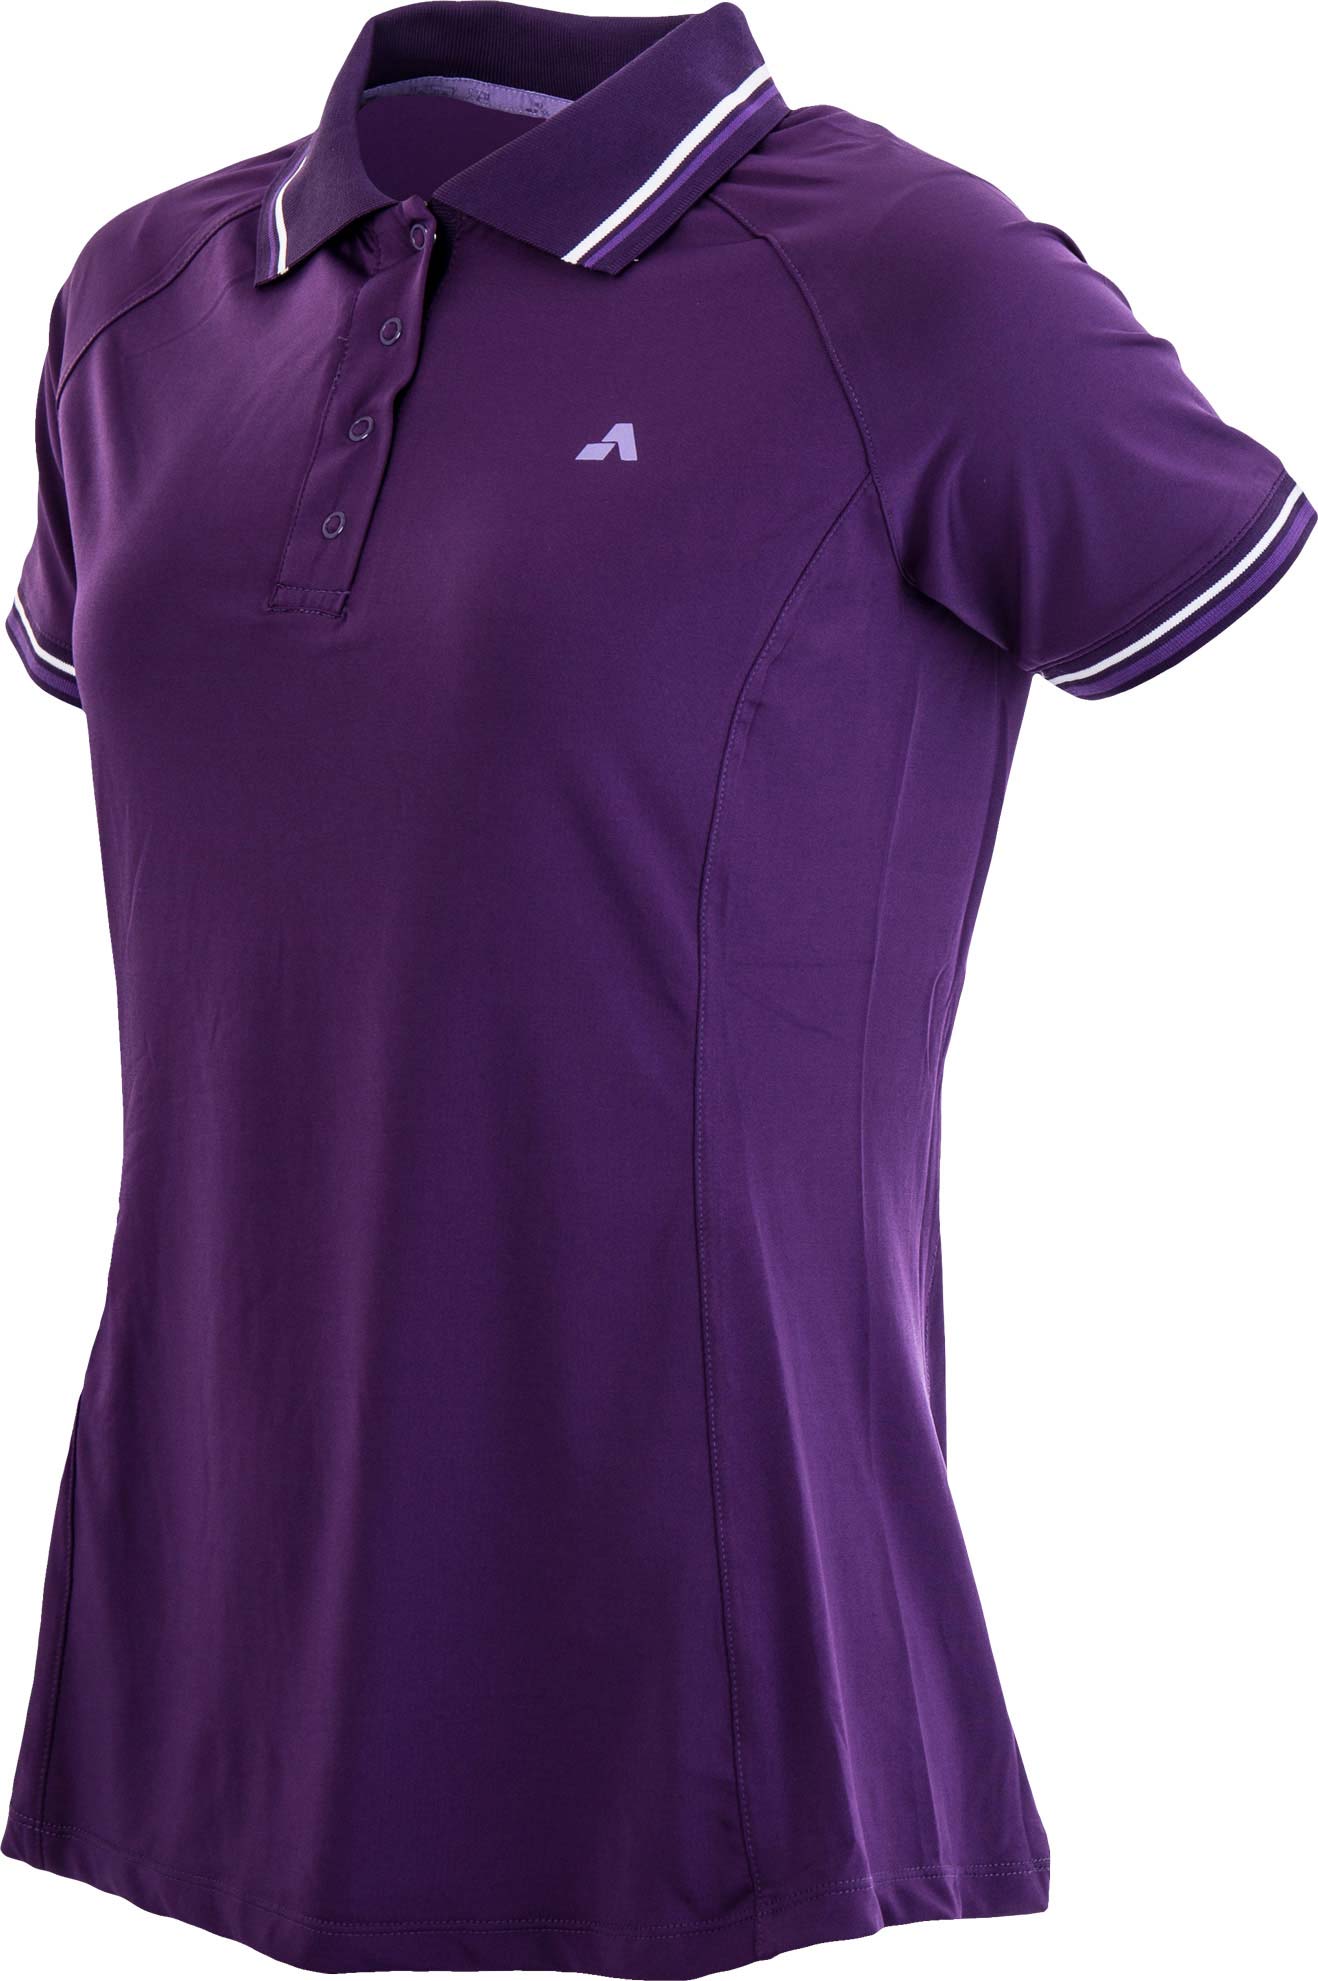 IDA - Women's Polo Shirt